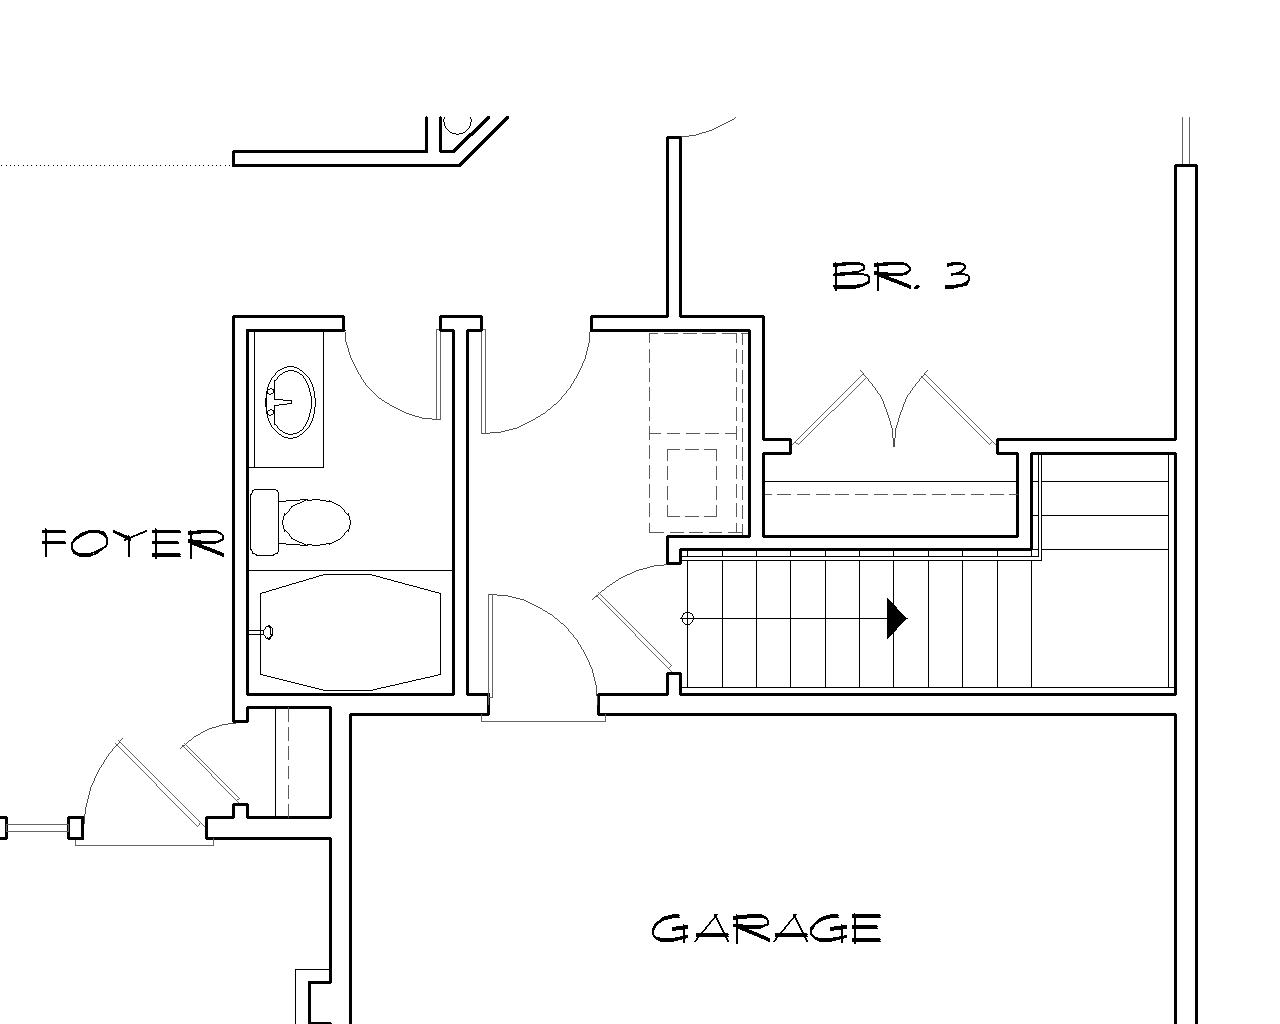 Craftsman Plan with 4 Bedrooms, 2 Bathrooms & a 2Car